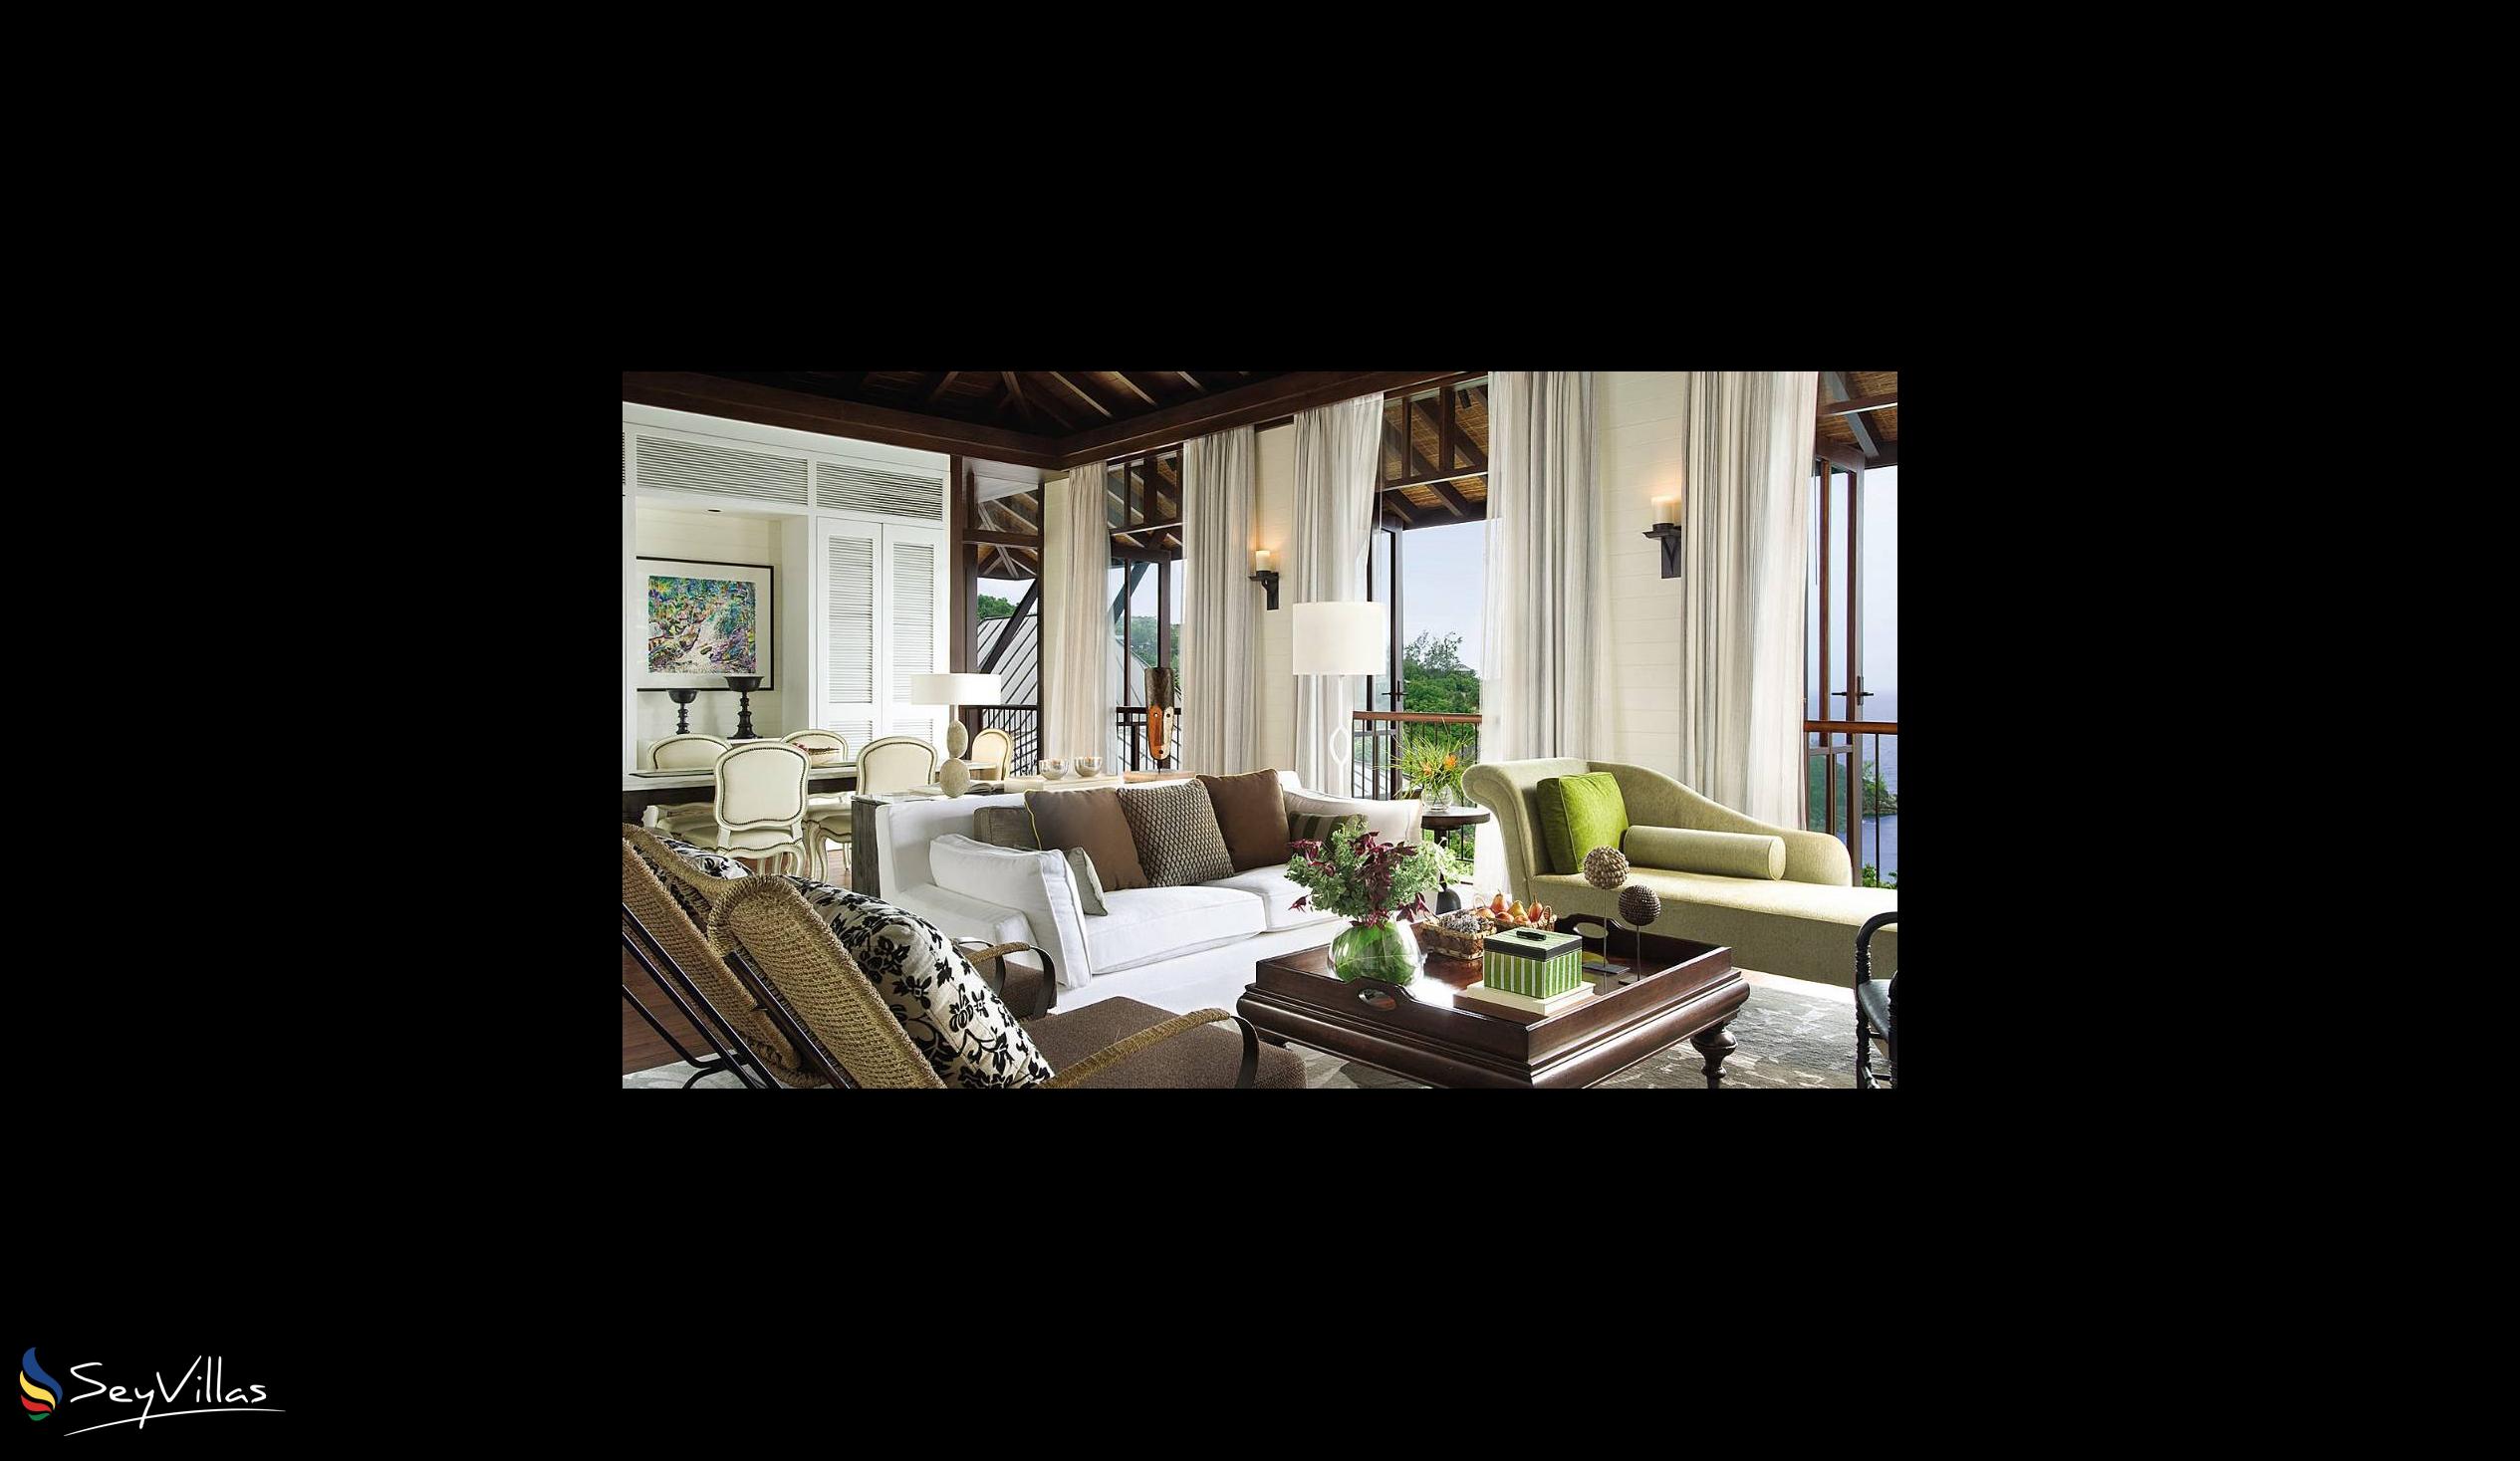 Foto 25: Four Seasons Resort - 2-Bedroom Hilltop Ocean View Suite - Mahé (Seychellen)